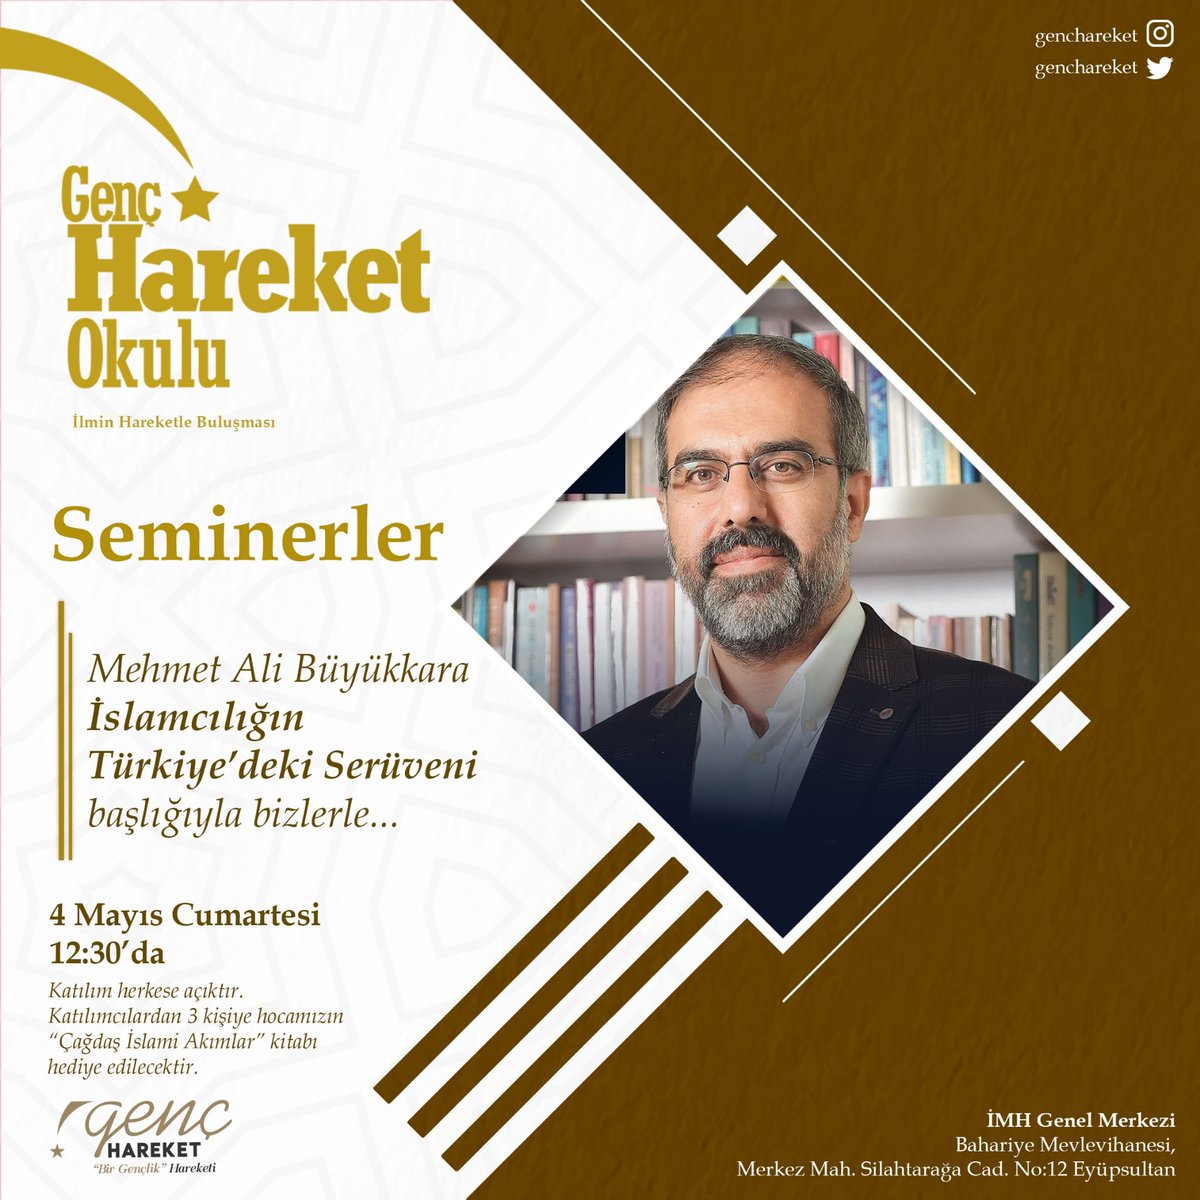 Hareket Okulu Eğitim Seminerlerinde bu hafta Mehmet Ali Büyükkara hocayı ağırlıyoruz. Müsait olanları bekleriz. Not: Katılımcılardan 3 kişiye hocamızın 'Çağdaş İslami Akımlar' kitabı hediye edilecektir.